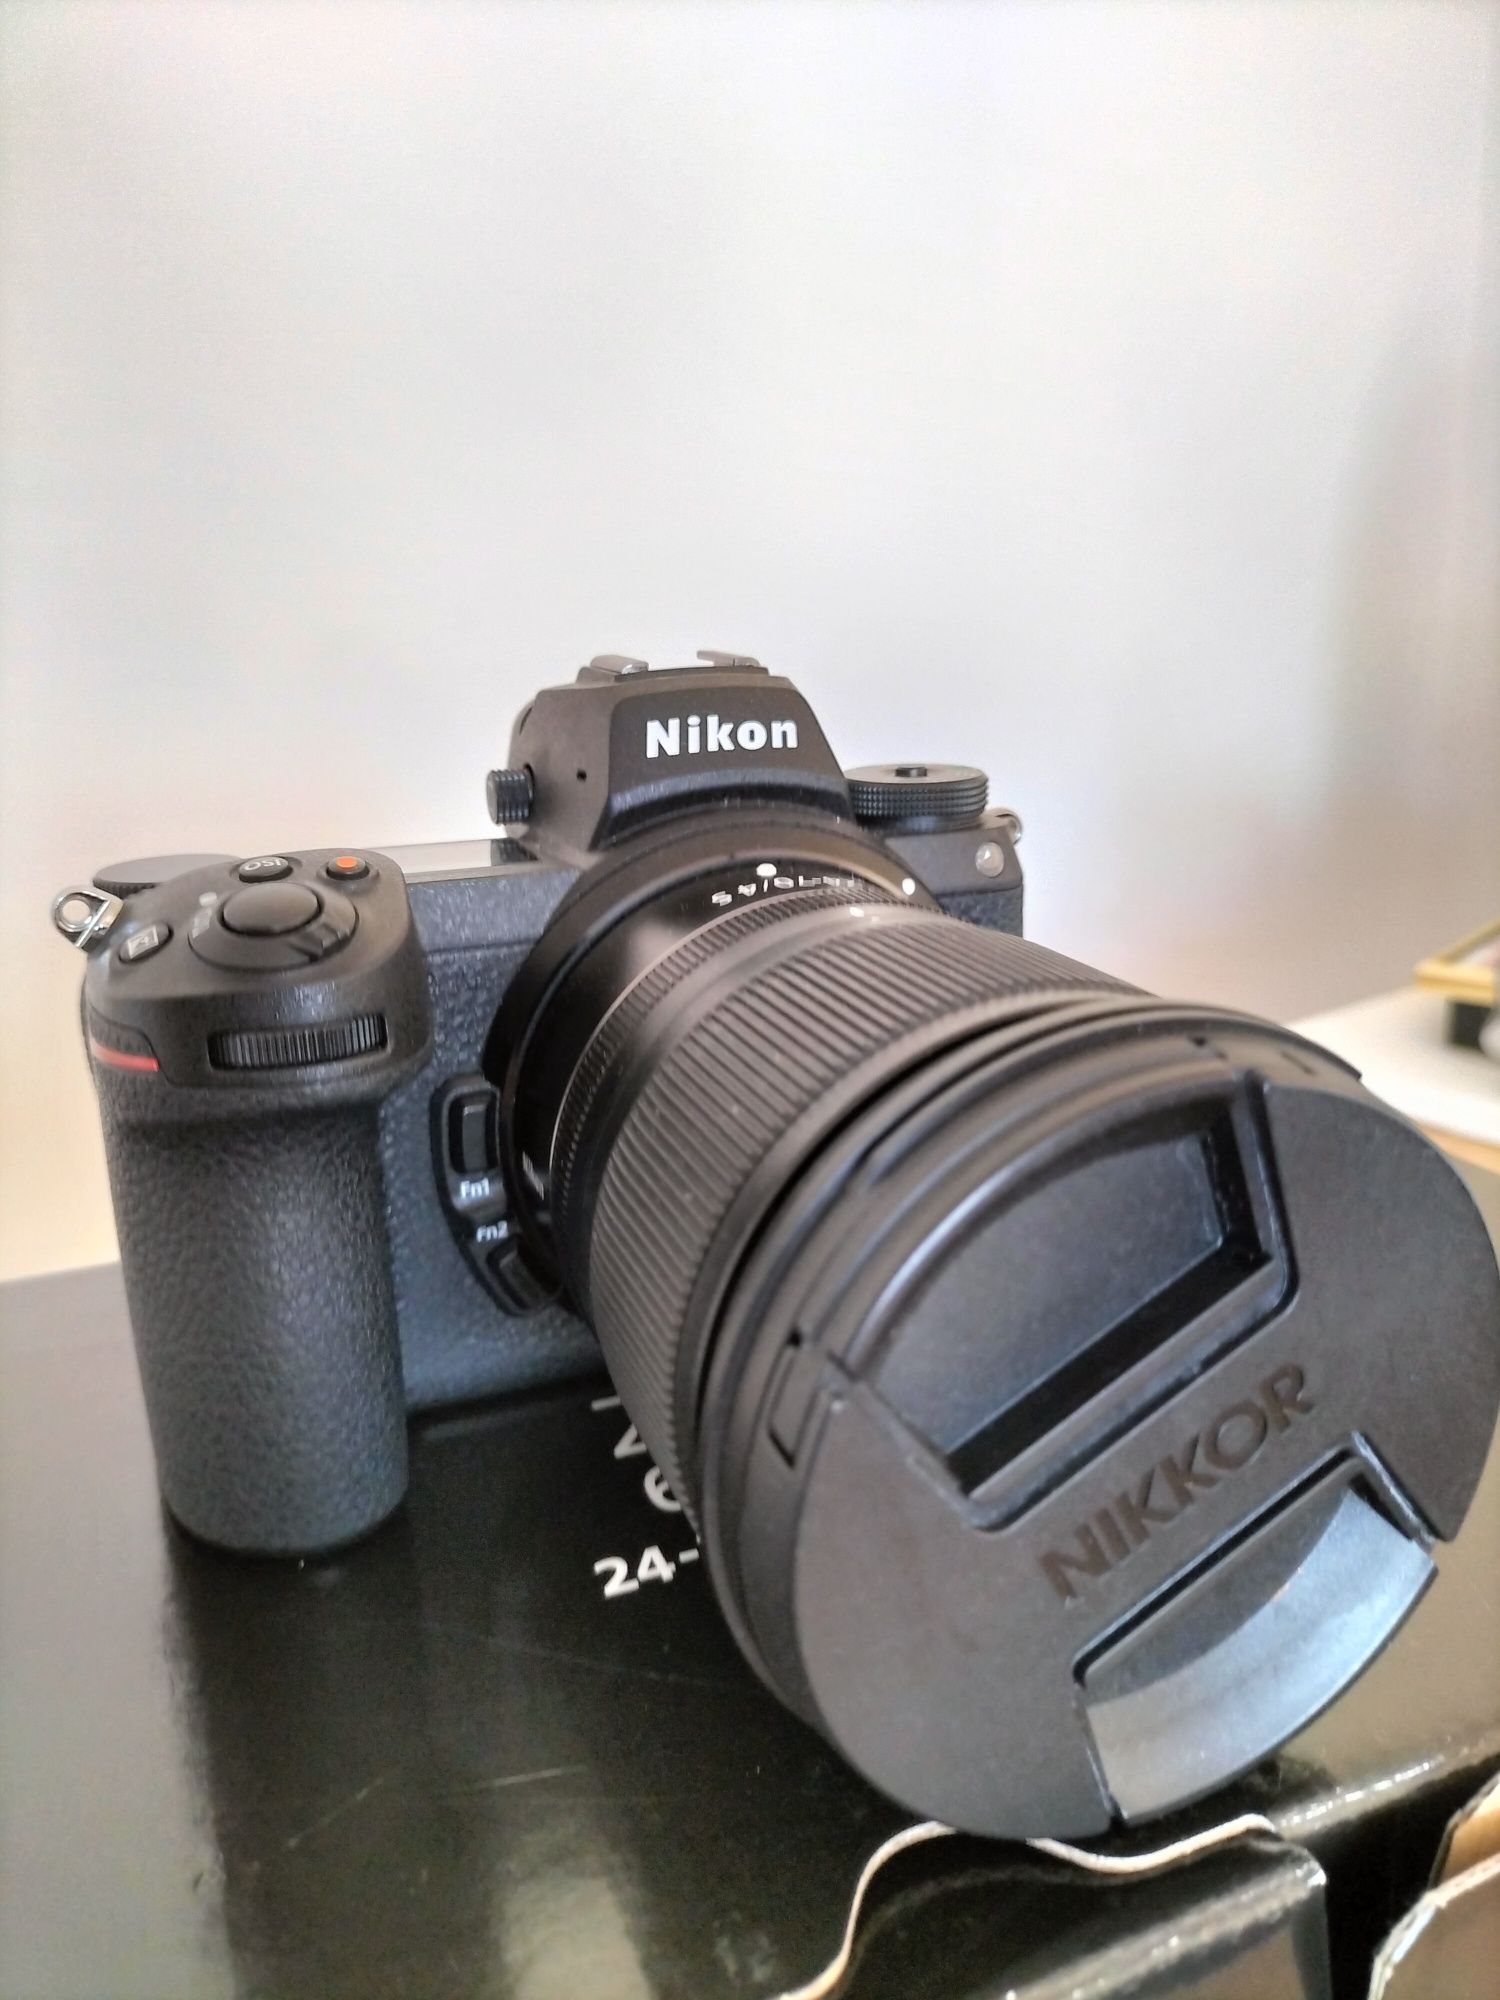 Aparat cyfrowy Nikon Z6 II + ob. 24-70 mm f/4 S - używany 10 razy